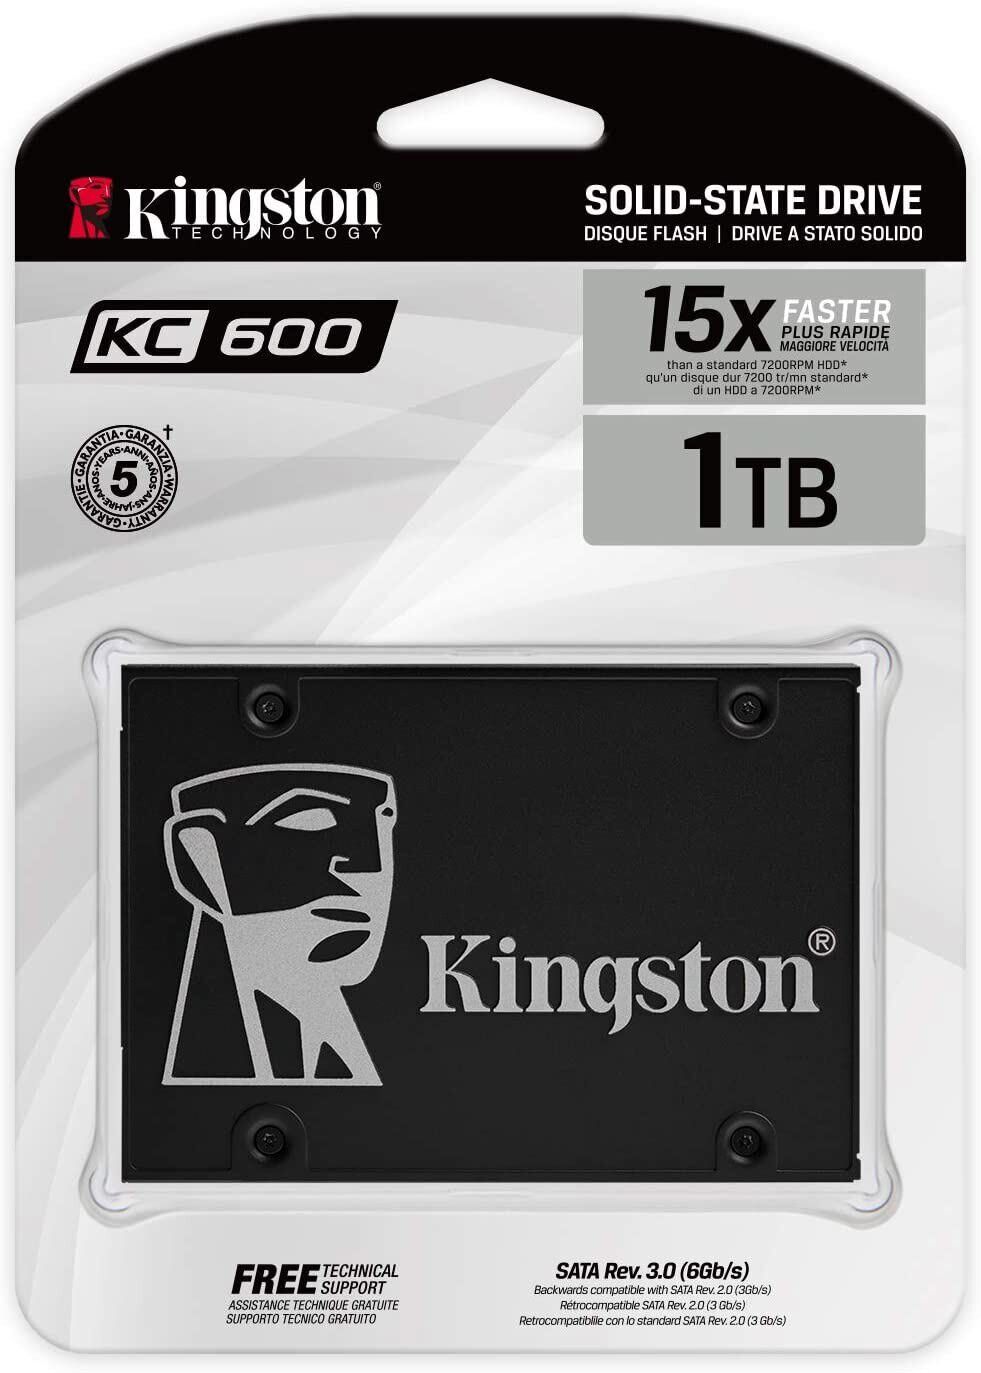 Kingston SATA III KC600 2.5in Internal SSD 256/512GB 1/2TB Solid State Drive lot